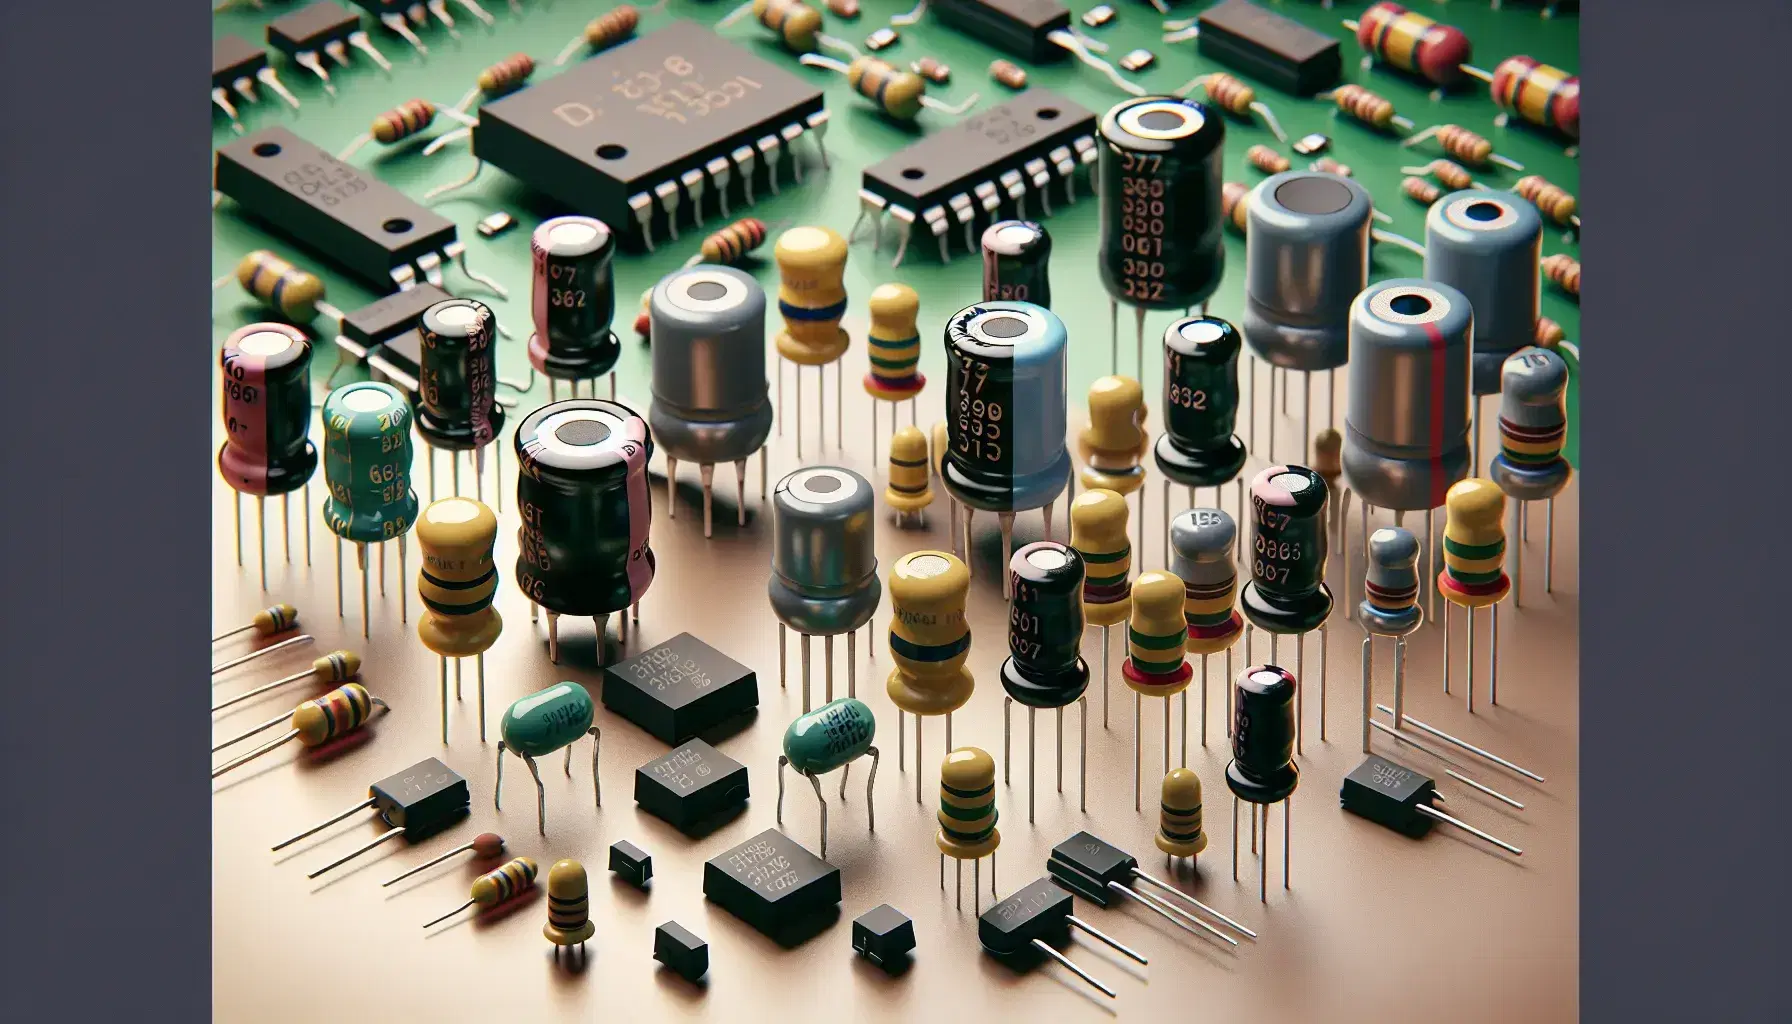 Componentes electrónicos como capacitores, resistores, diodos y transistor sobre superficie neutra con placa de circuito impreso al fondo.